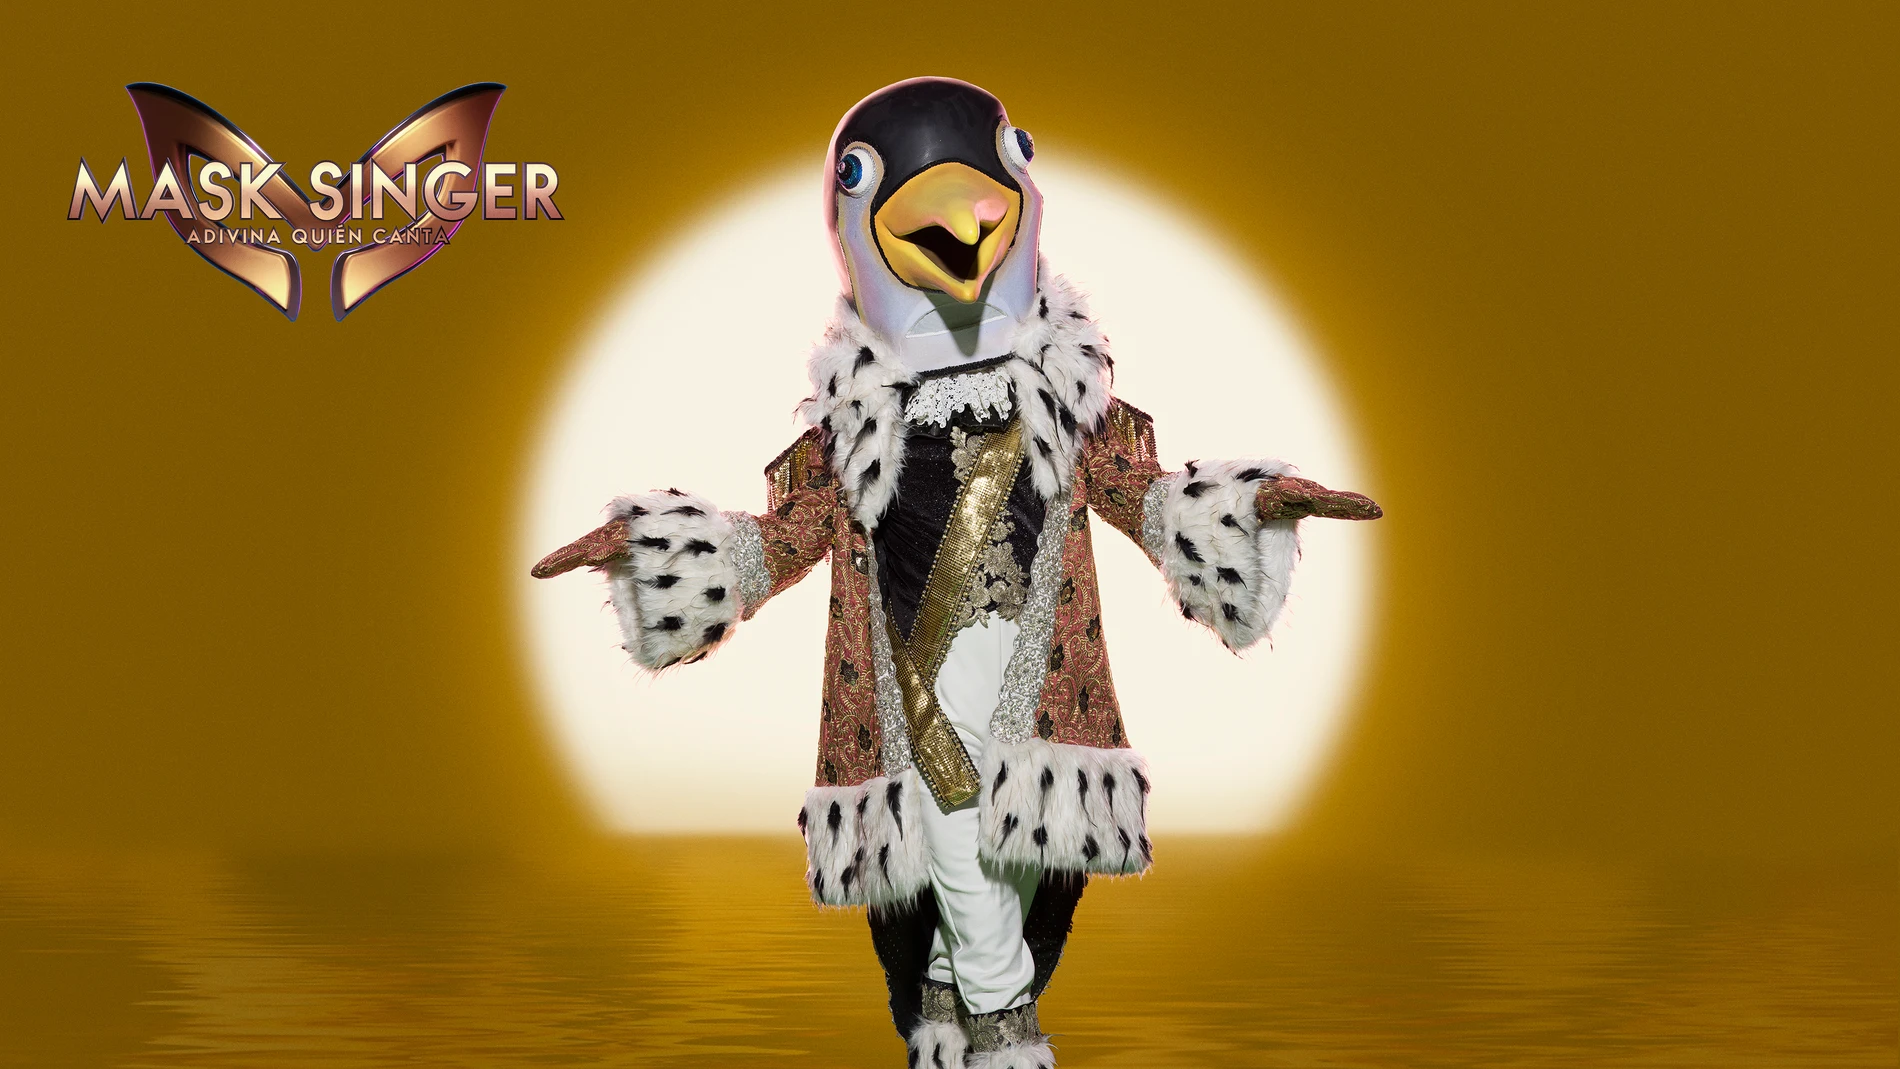 Arranca la recta final de ‘Mask Singer’: unificación de máscaras y la llegada de Pingüino